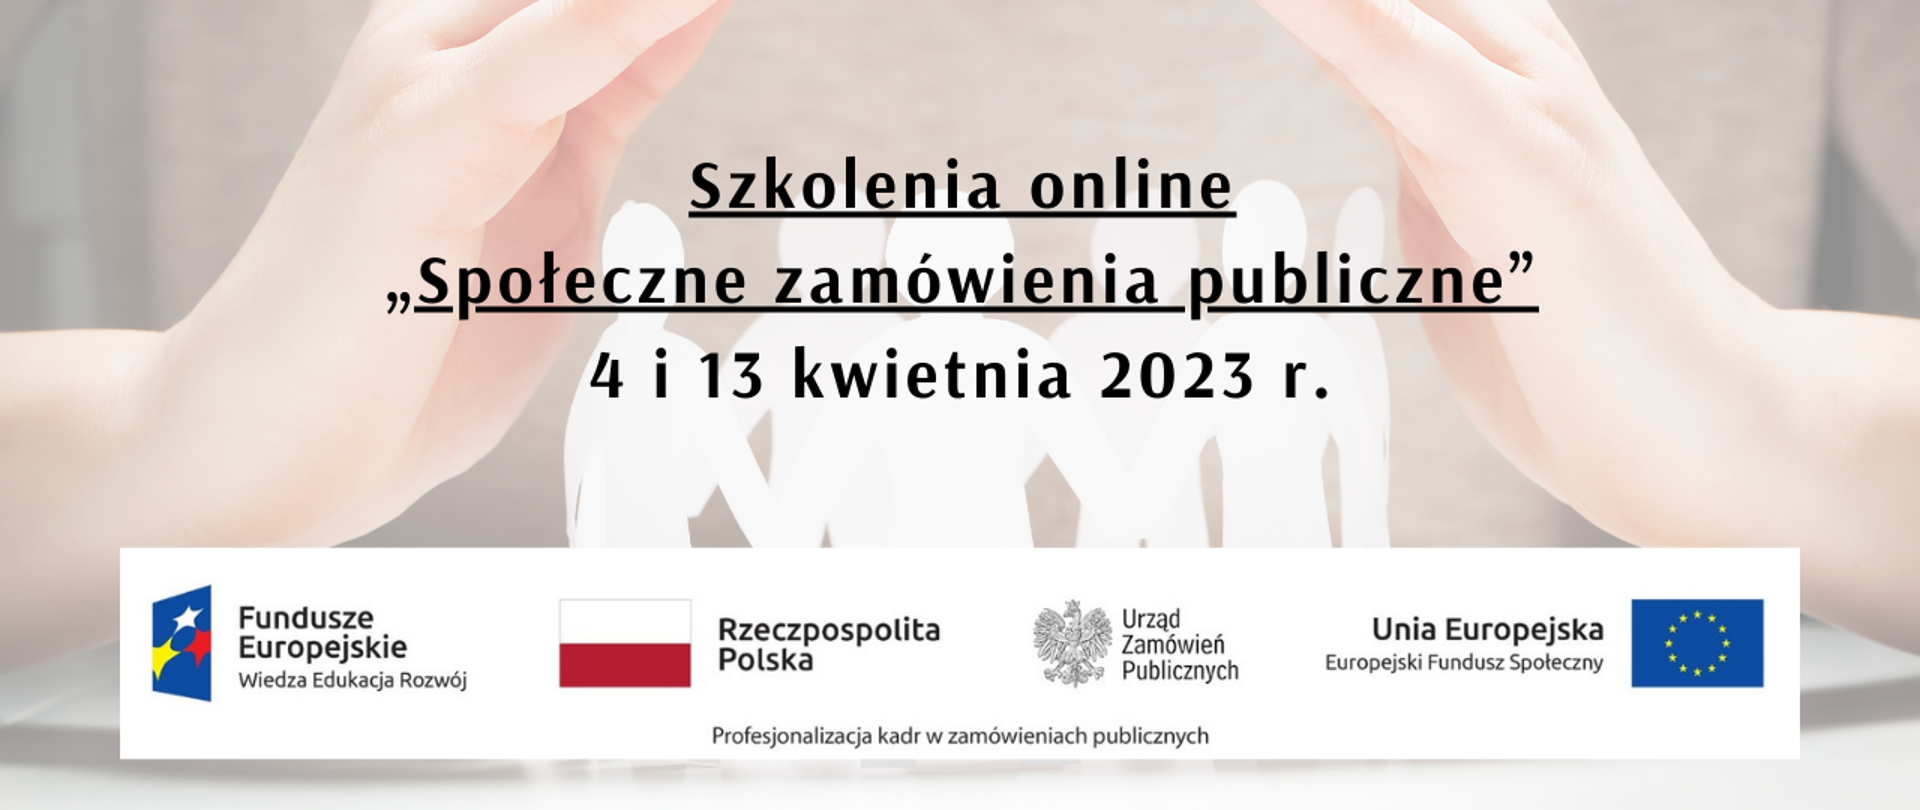 „Społeczne zamówienia publiczne” – szkolenia online 4, 13 kwietnia 2023 roku